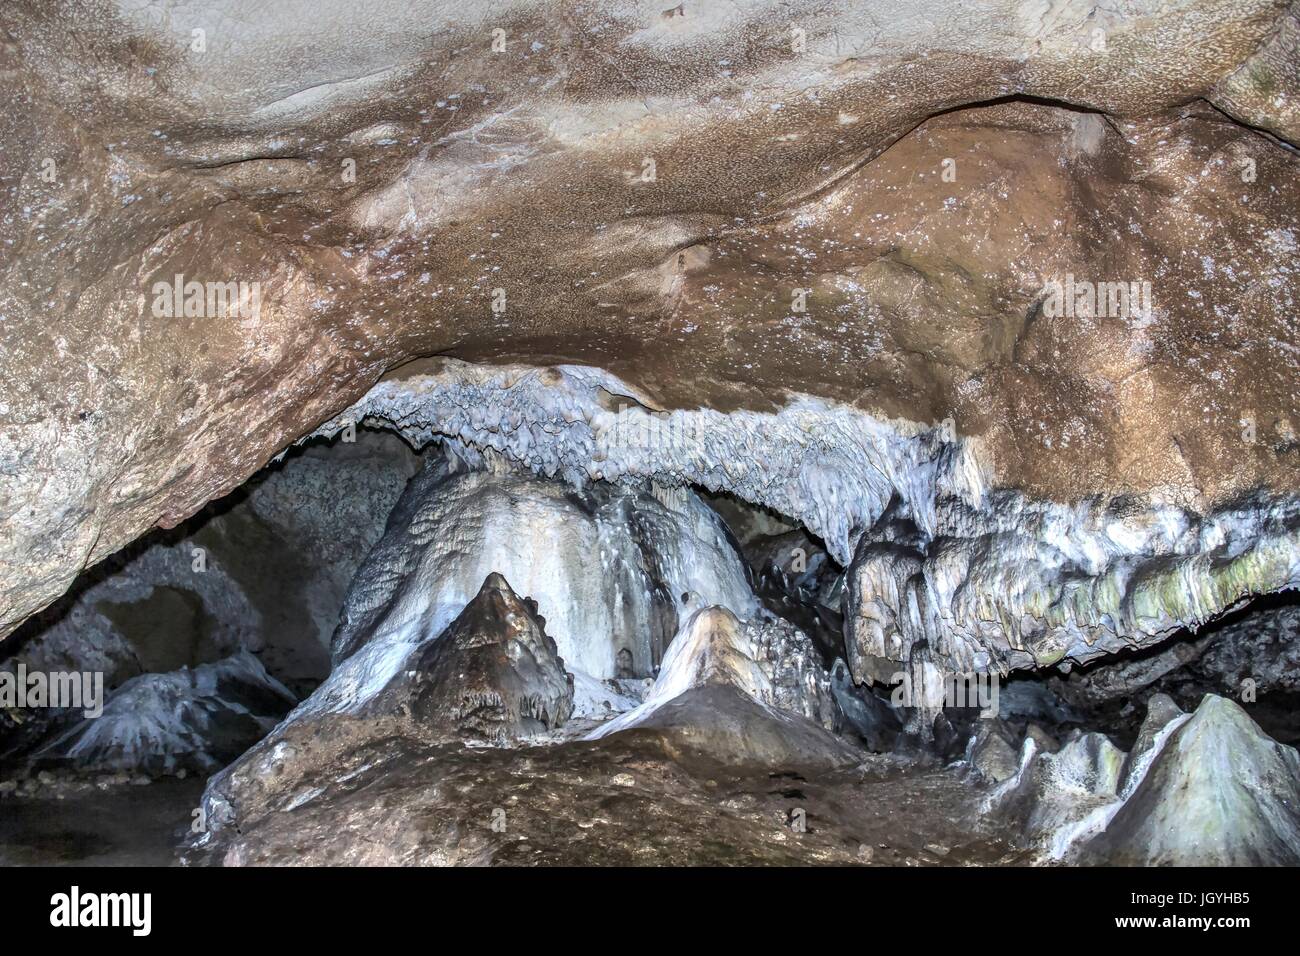 Zlot grotte, est de la Serbie - Cave des décorations et des formations rocheuses en forme remarquable Banque D'Images